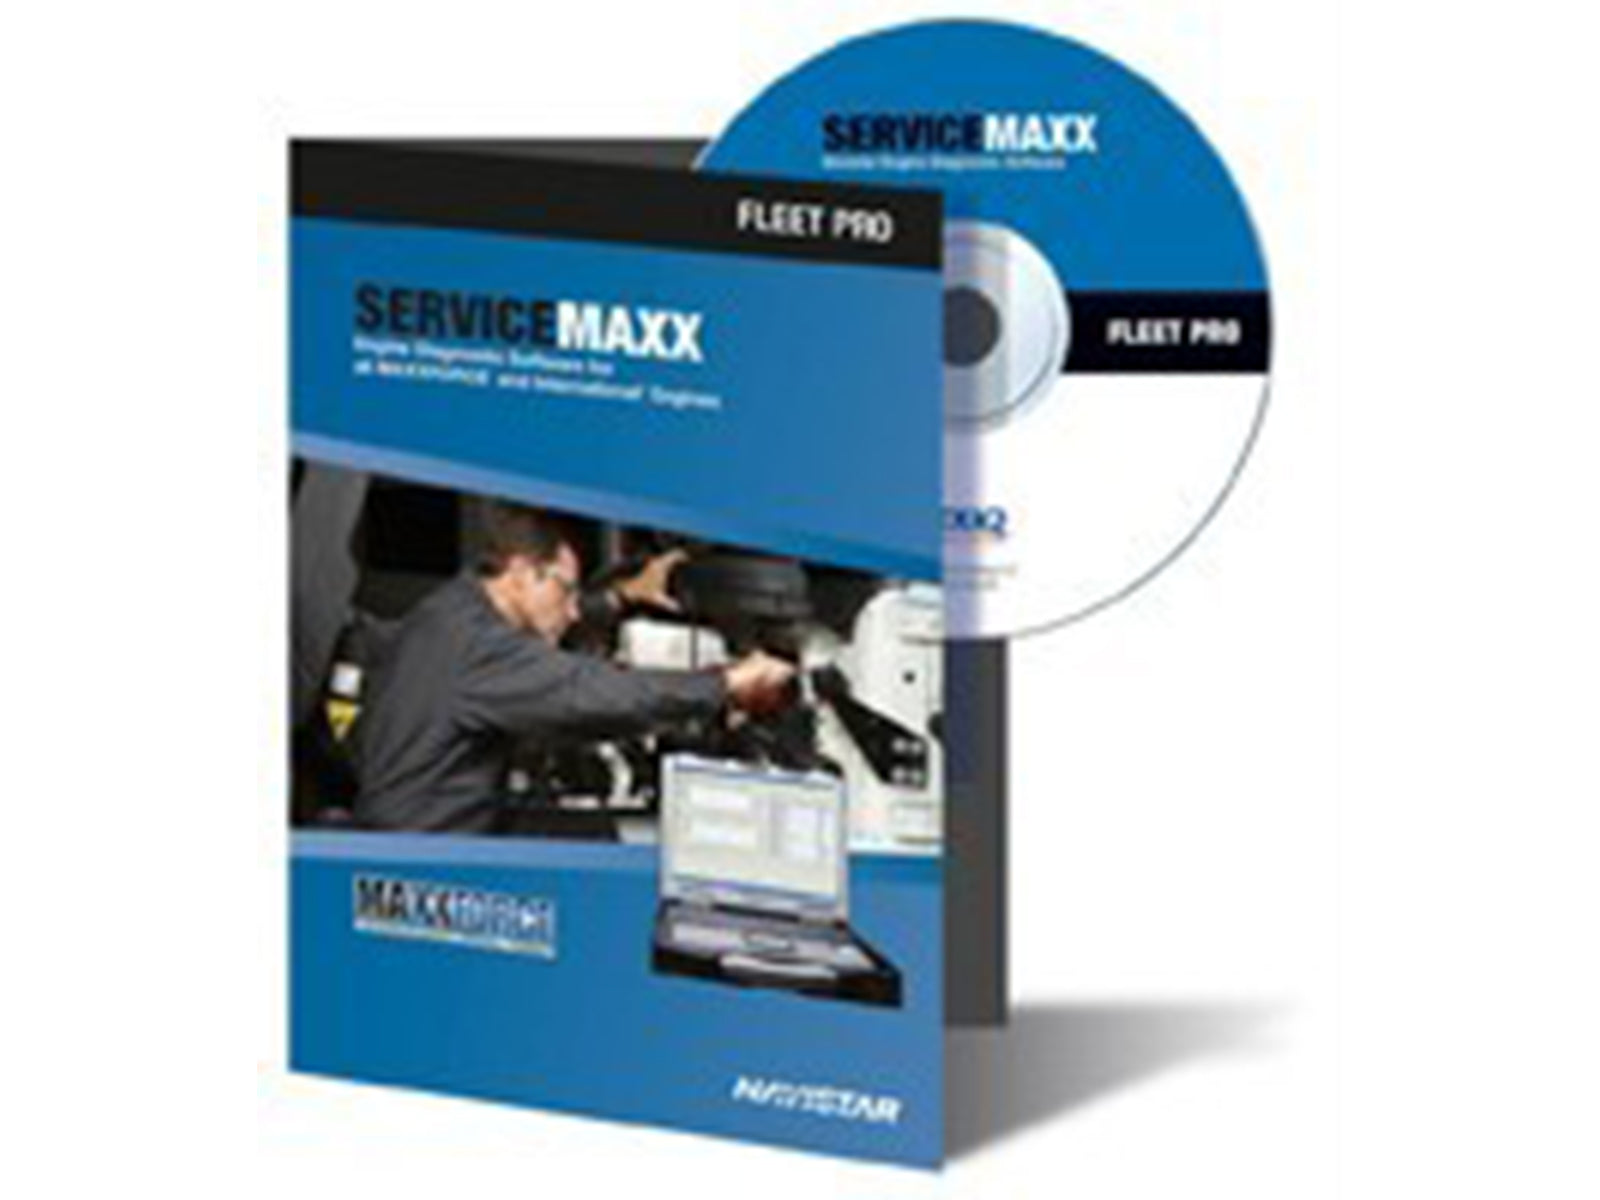 servicemaxx pro keygen